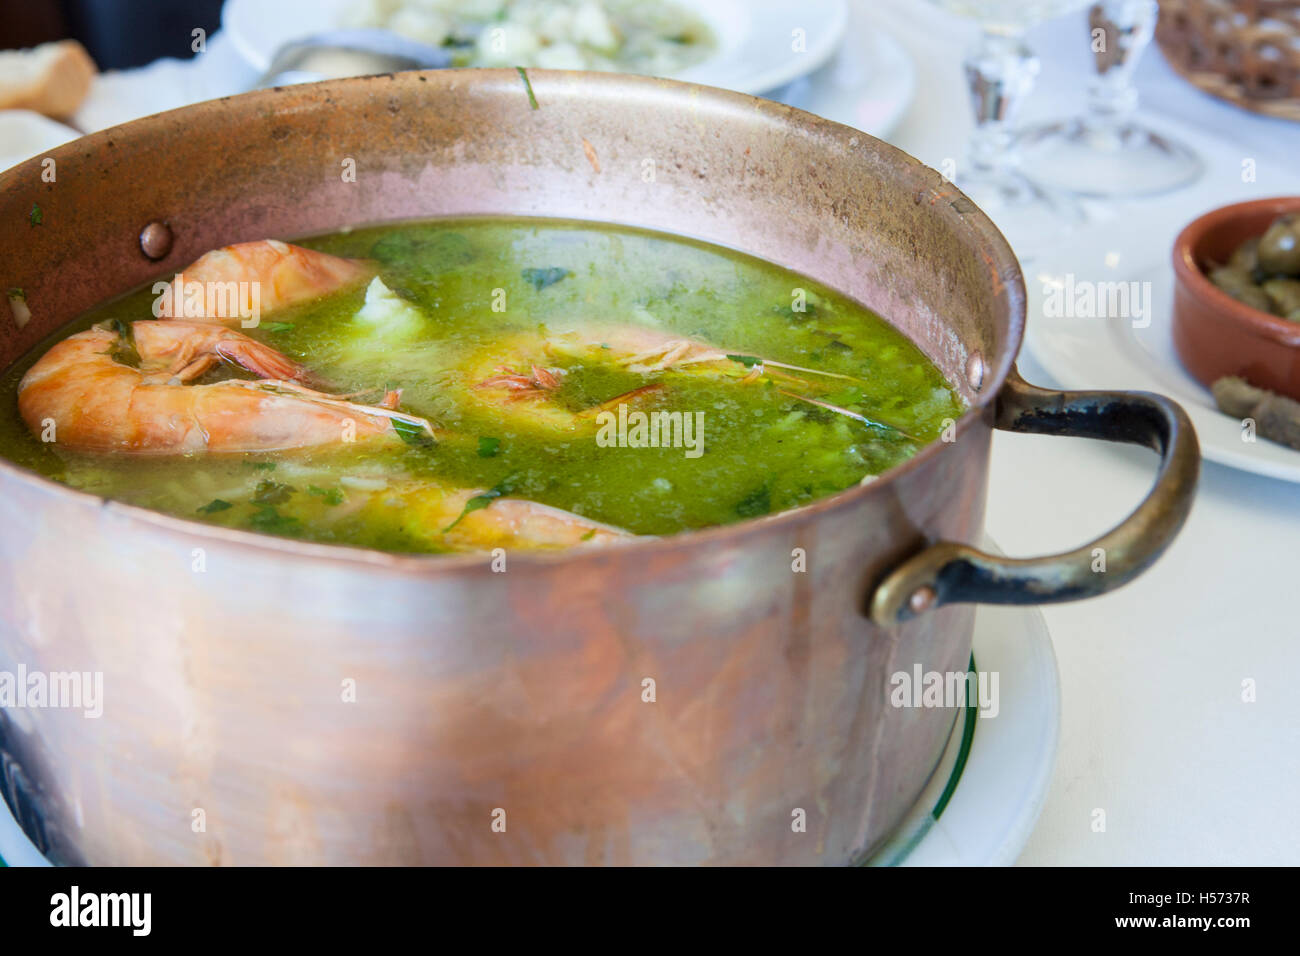 Arroz de Tamboril or soupy seafood rice, portuguese recipe Stock Photo